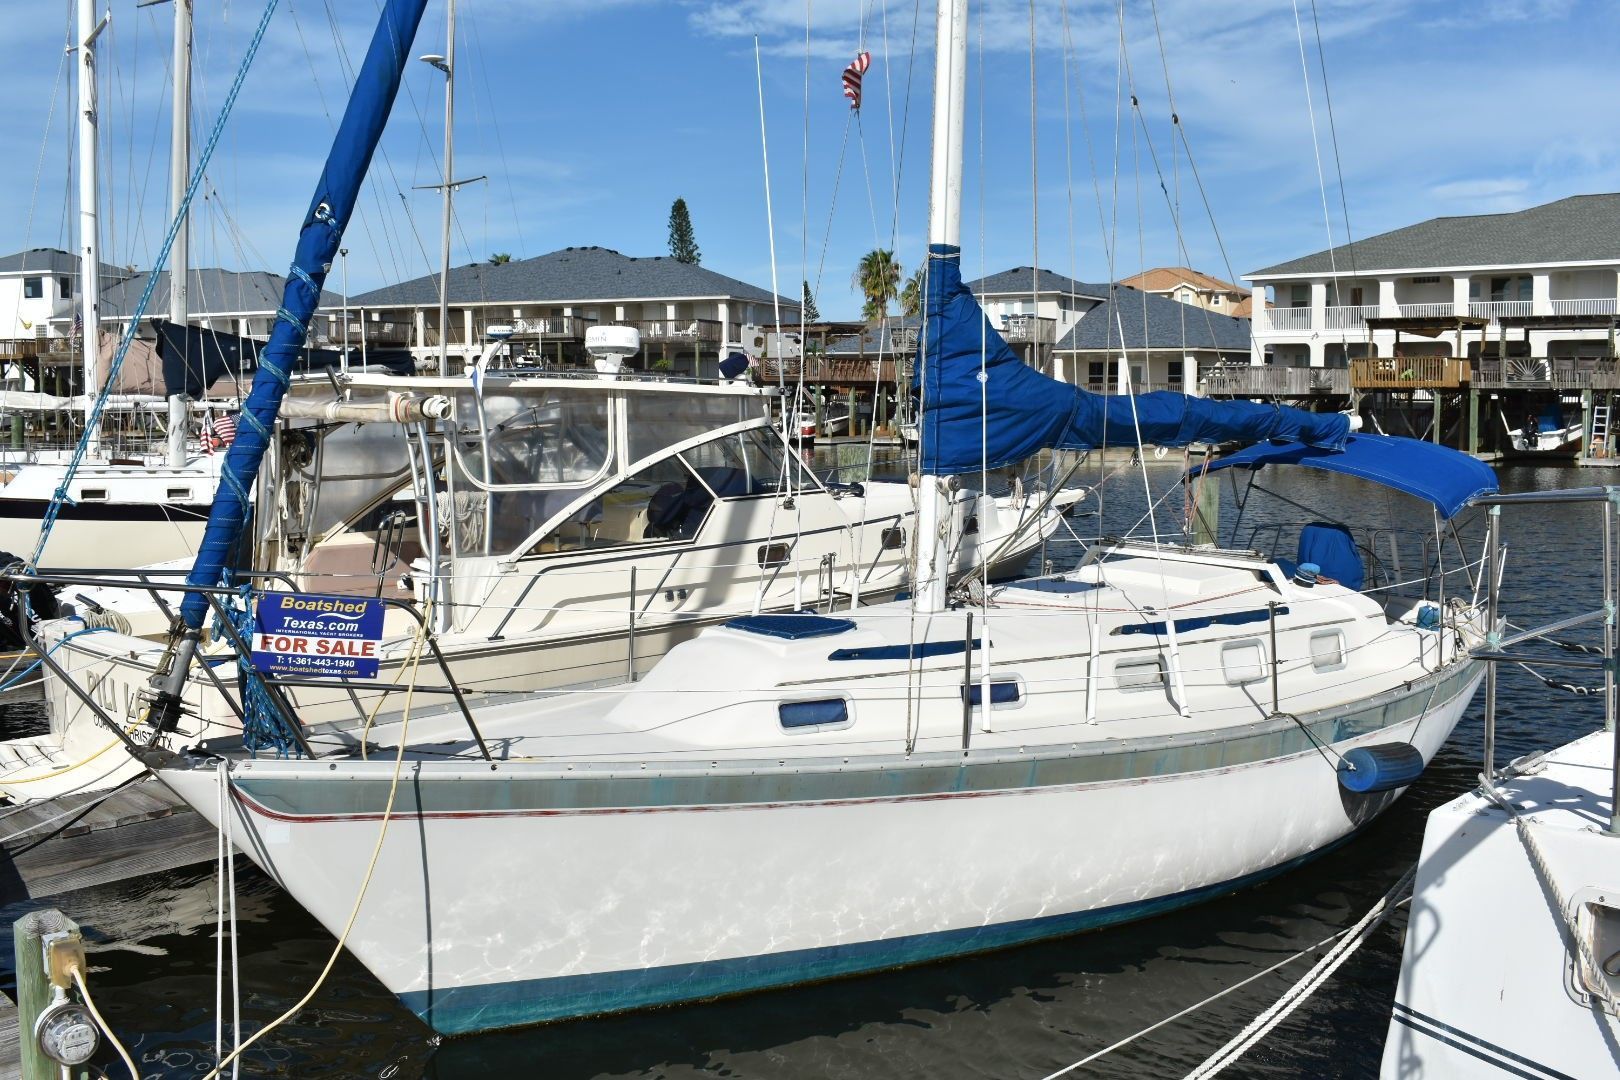 irwin 34 sailboat